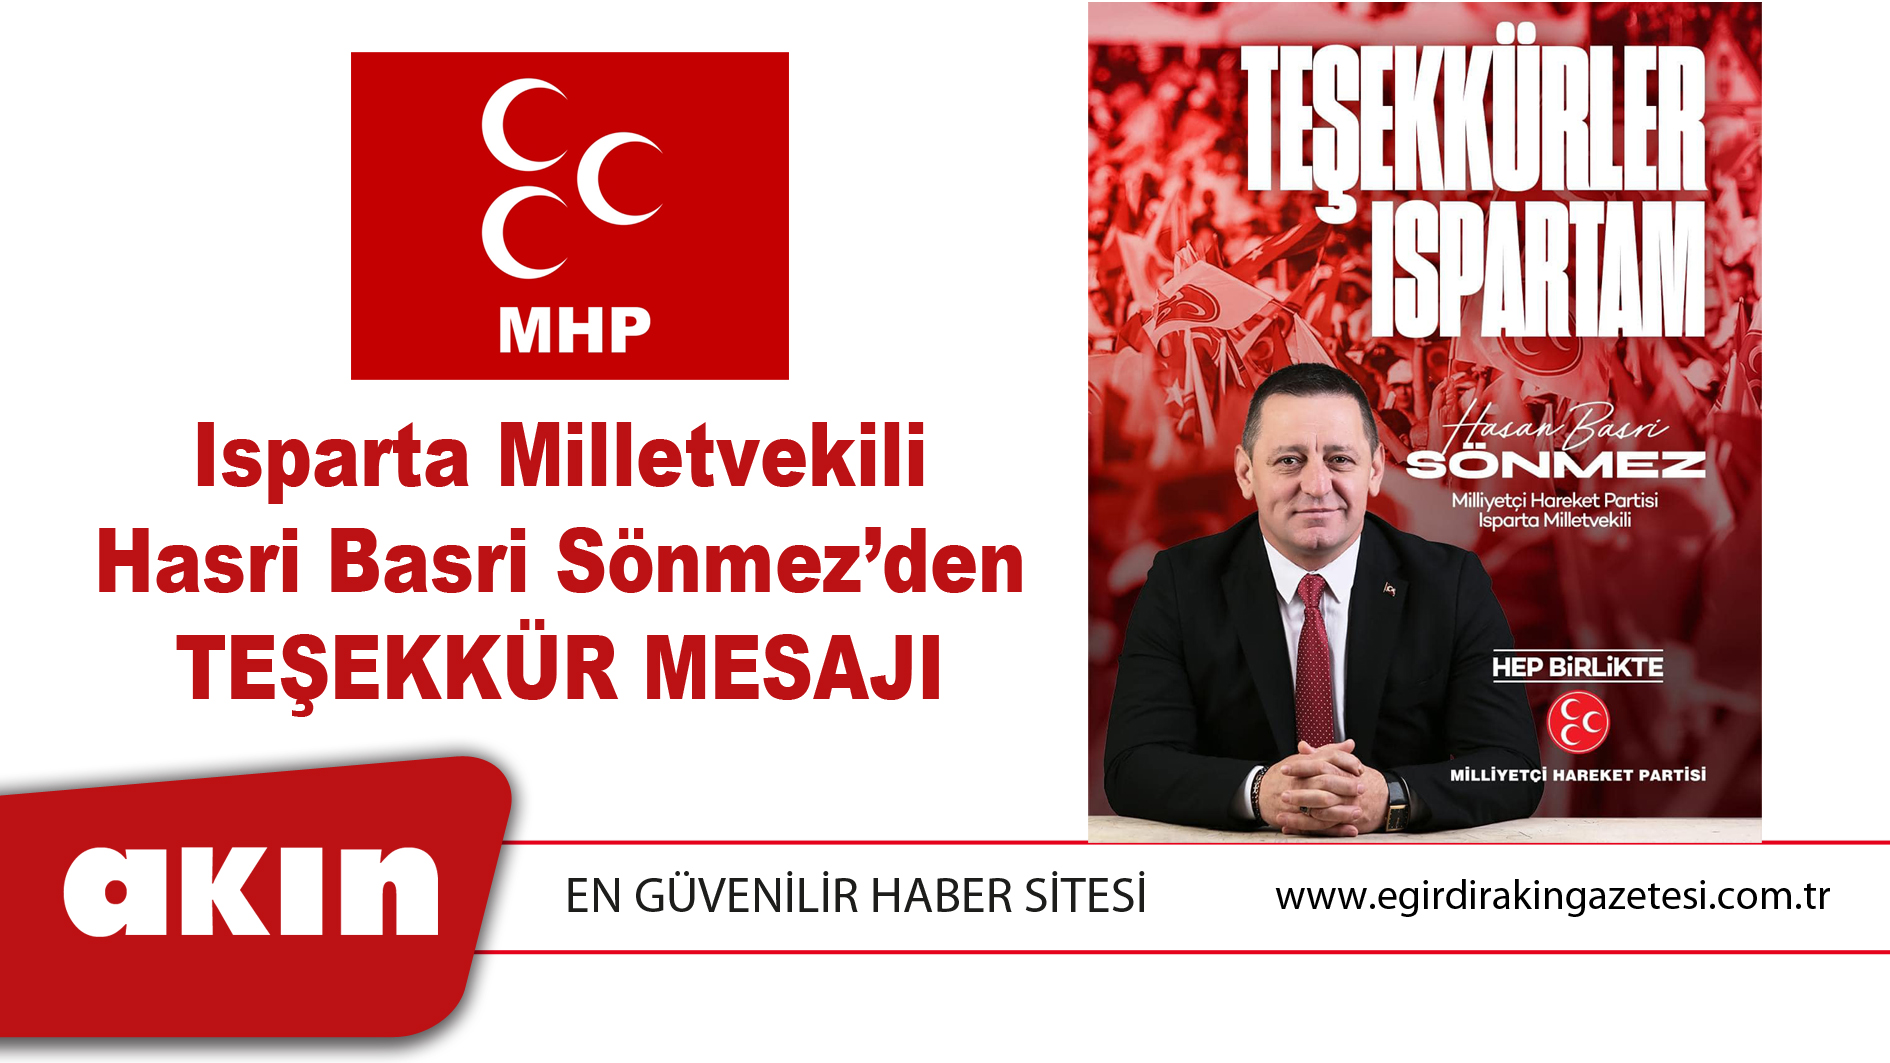 MHP Isparta Milletvekili Hasri Basri Sönmez’den Teşekkür Mesajı